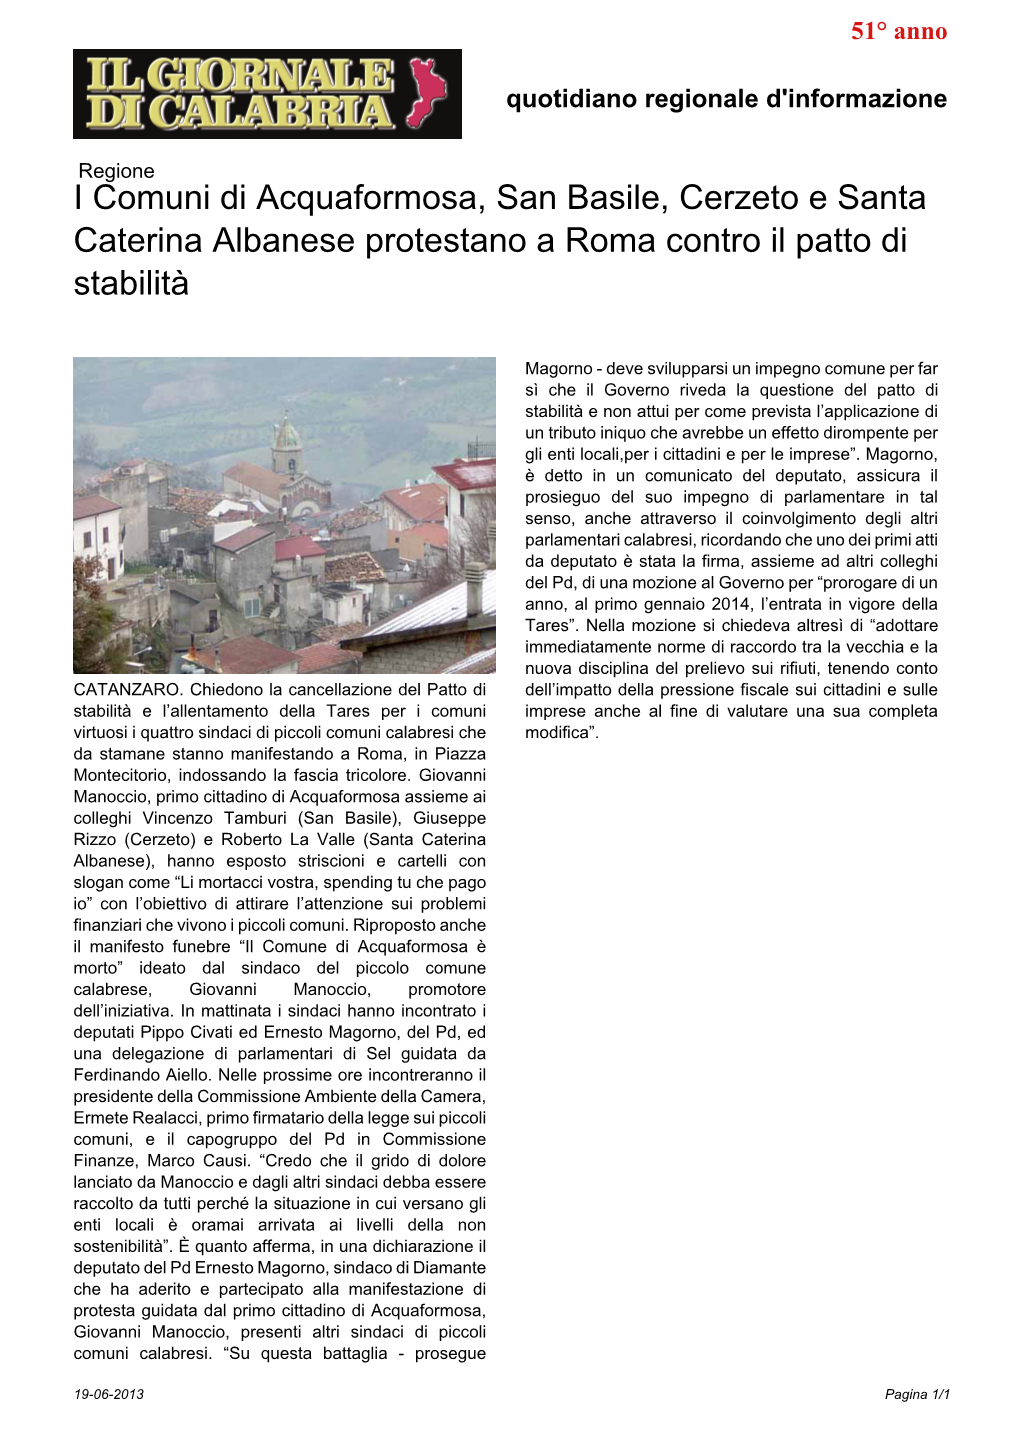 I Comuni Di Acquaformosa, San Basile, Cerzeto E Santa Caterina Albanese Protestano a Roma Contro Il Patto Di Stabilità